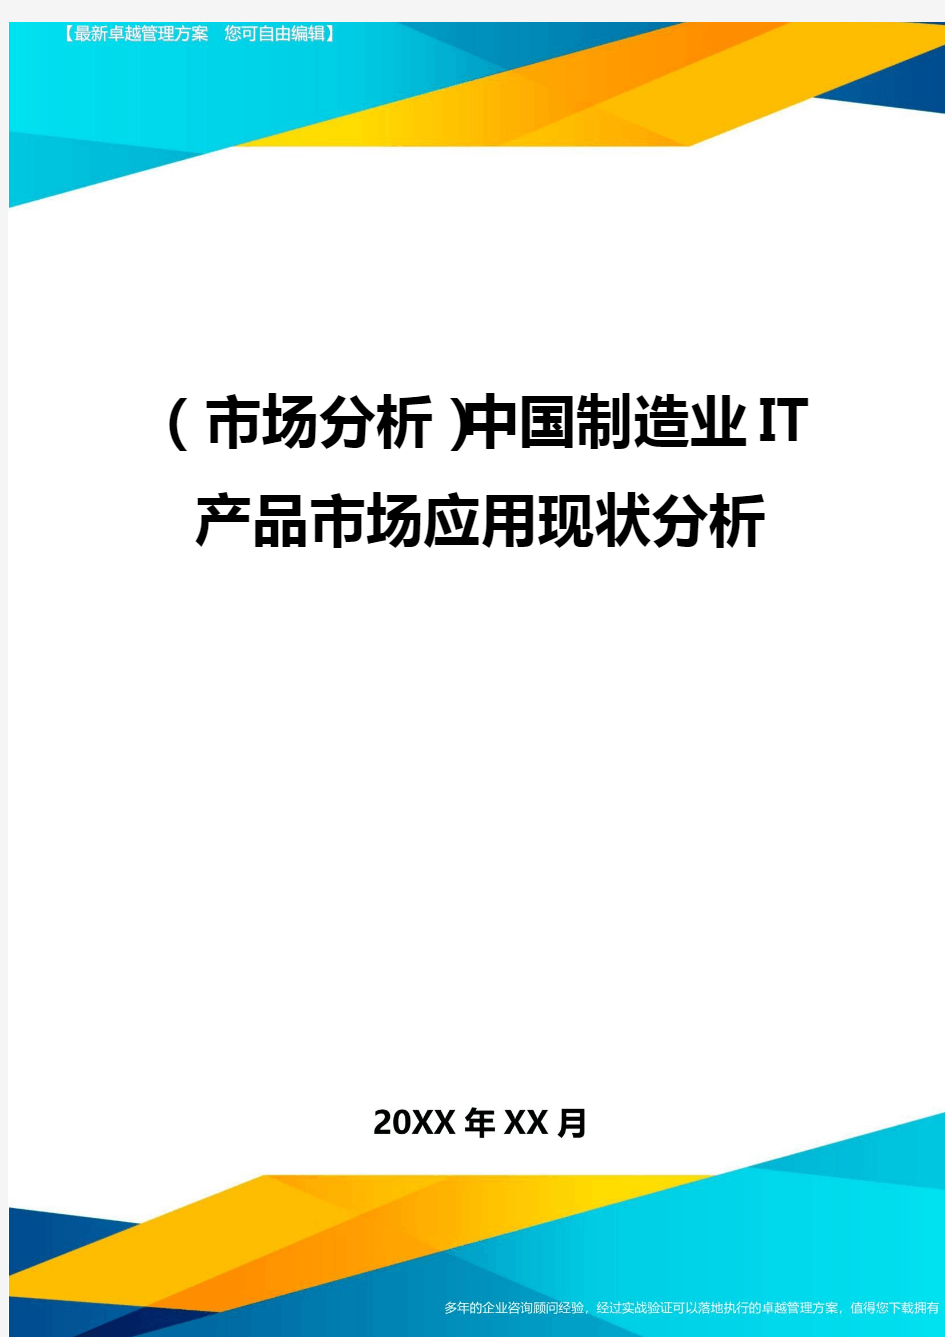 2020年市场分析中国制造业IT产品市场应用现状分析完整版